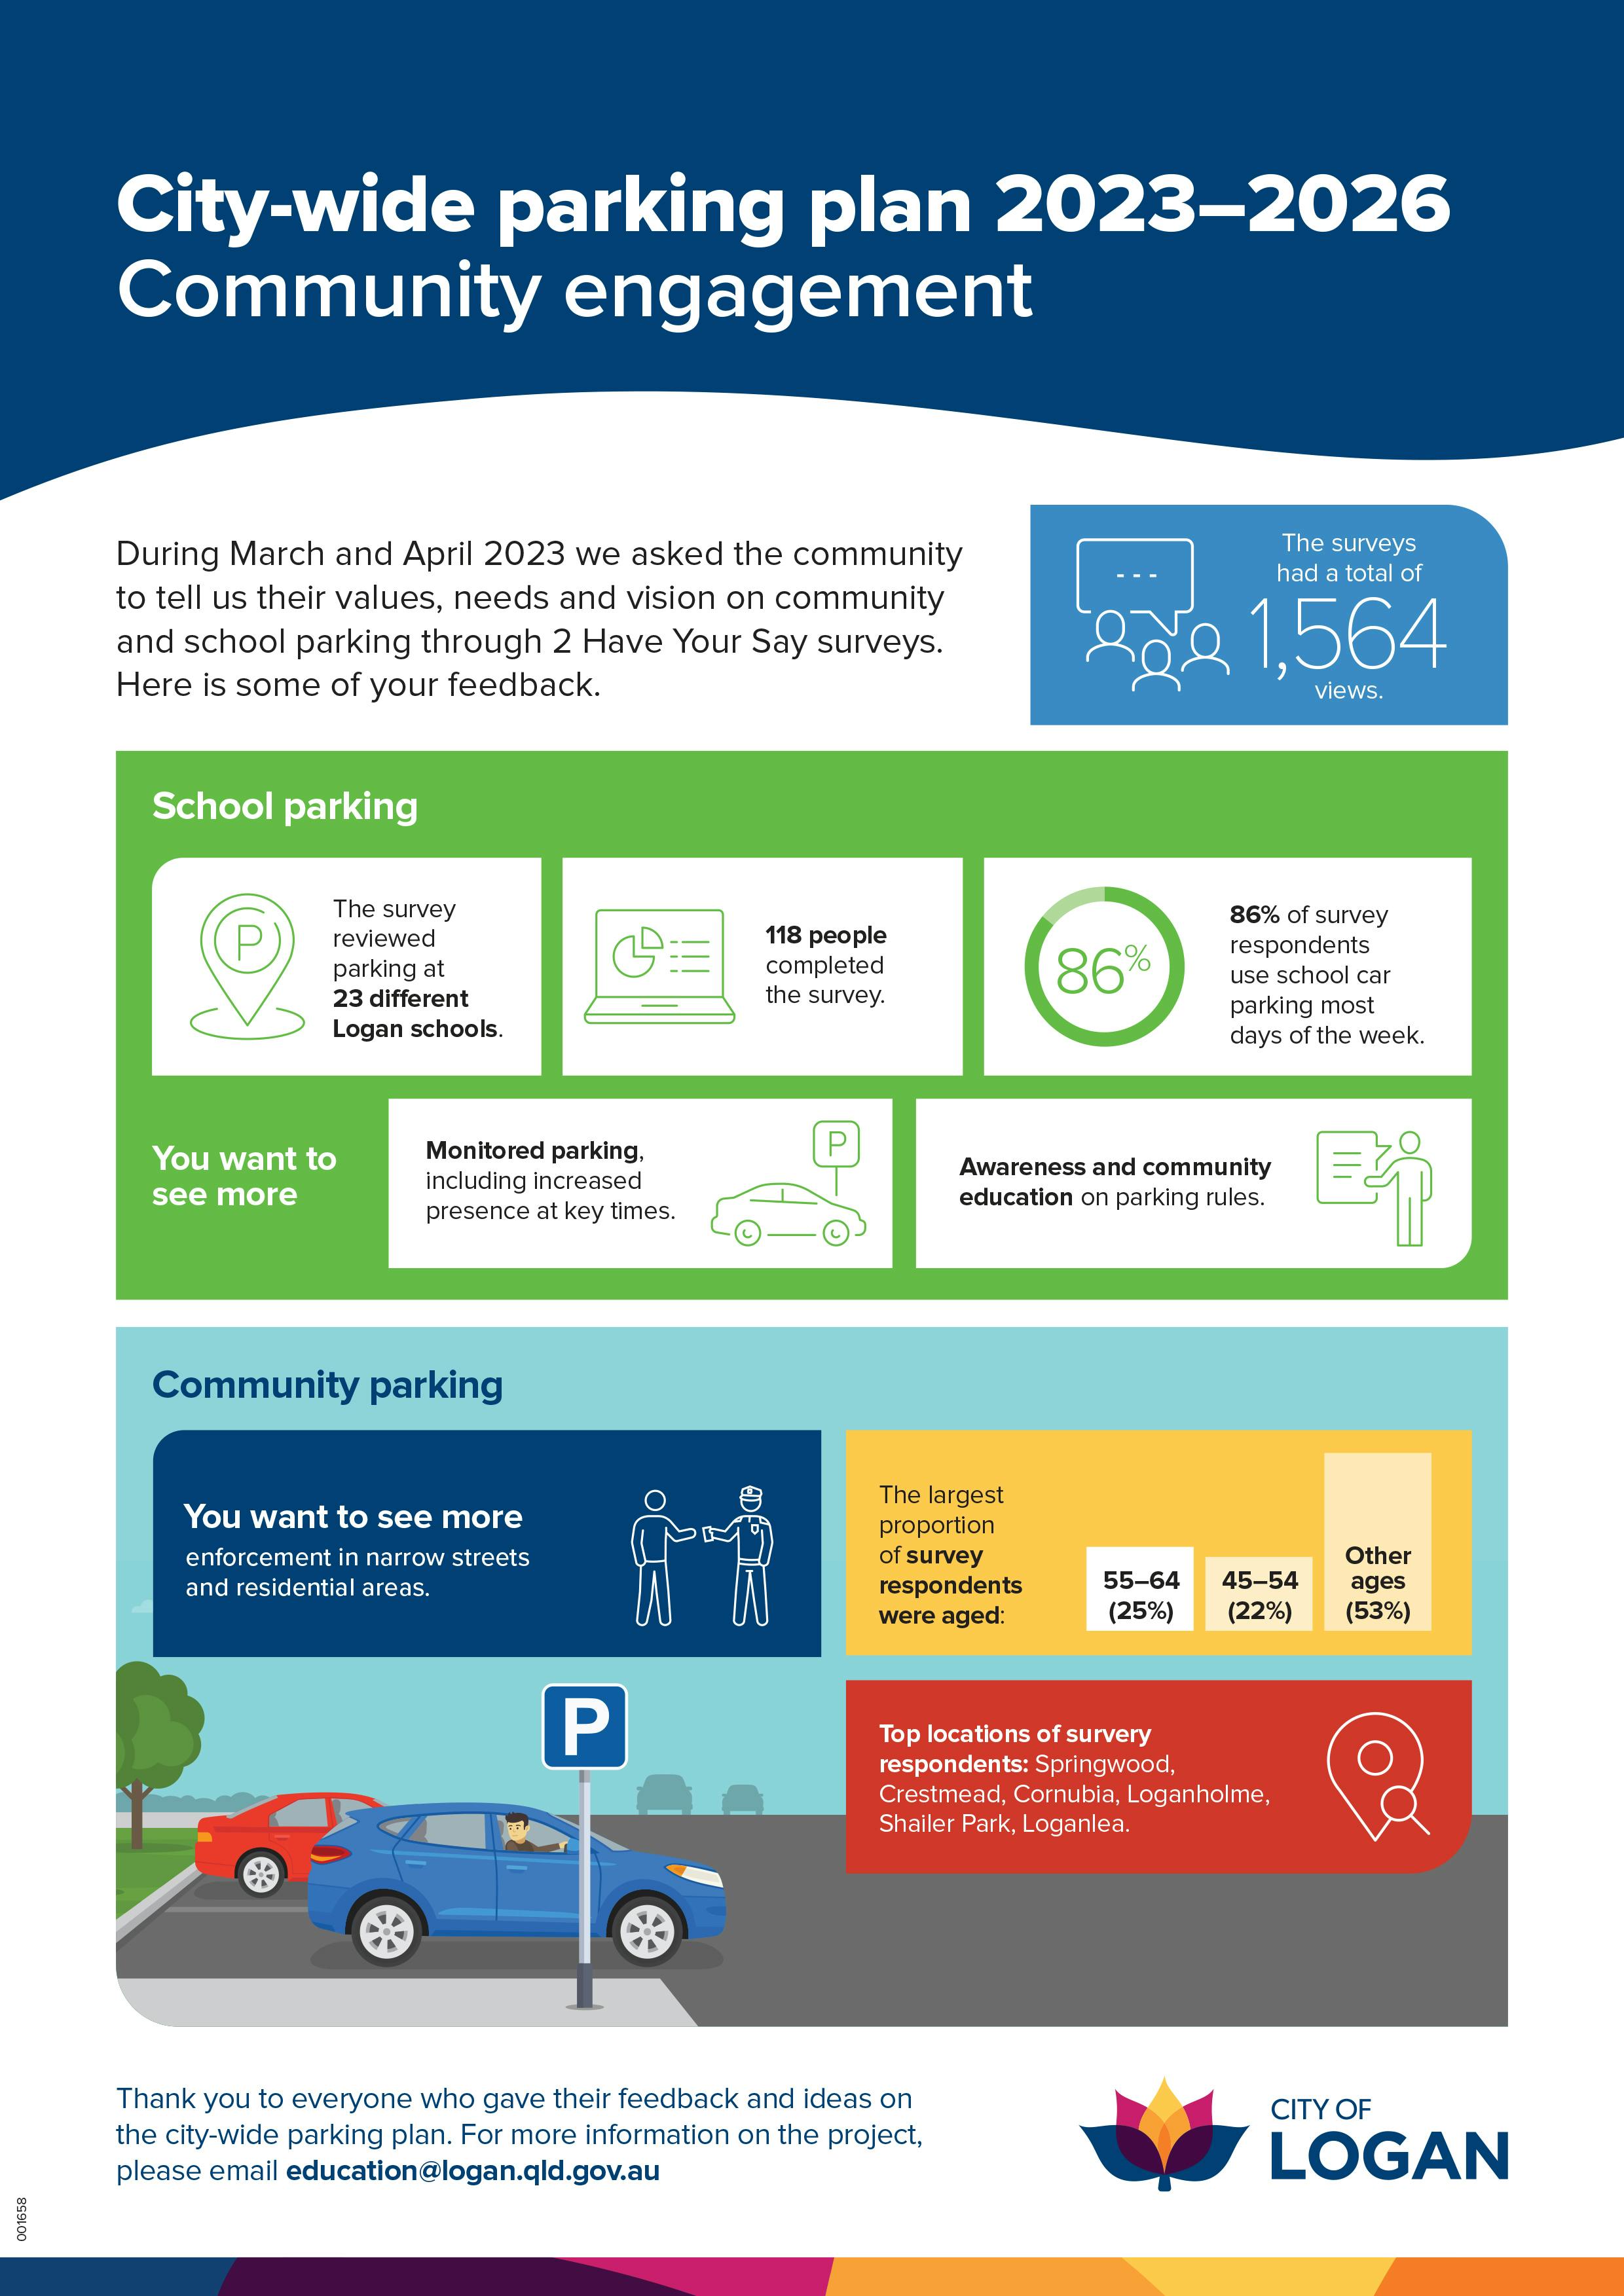 001658 CSAC - City-wide Parking Plan Infographic [D].jpg